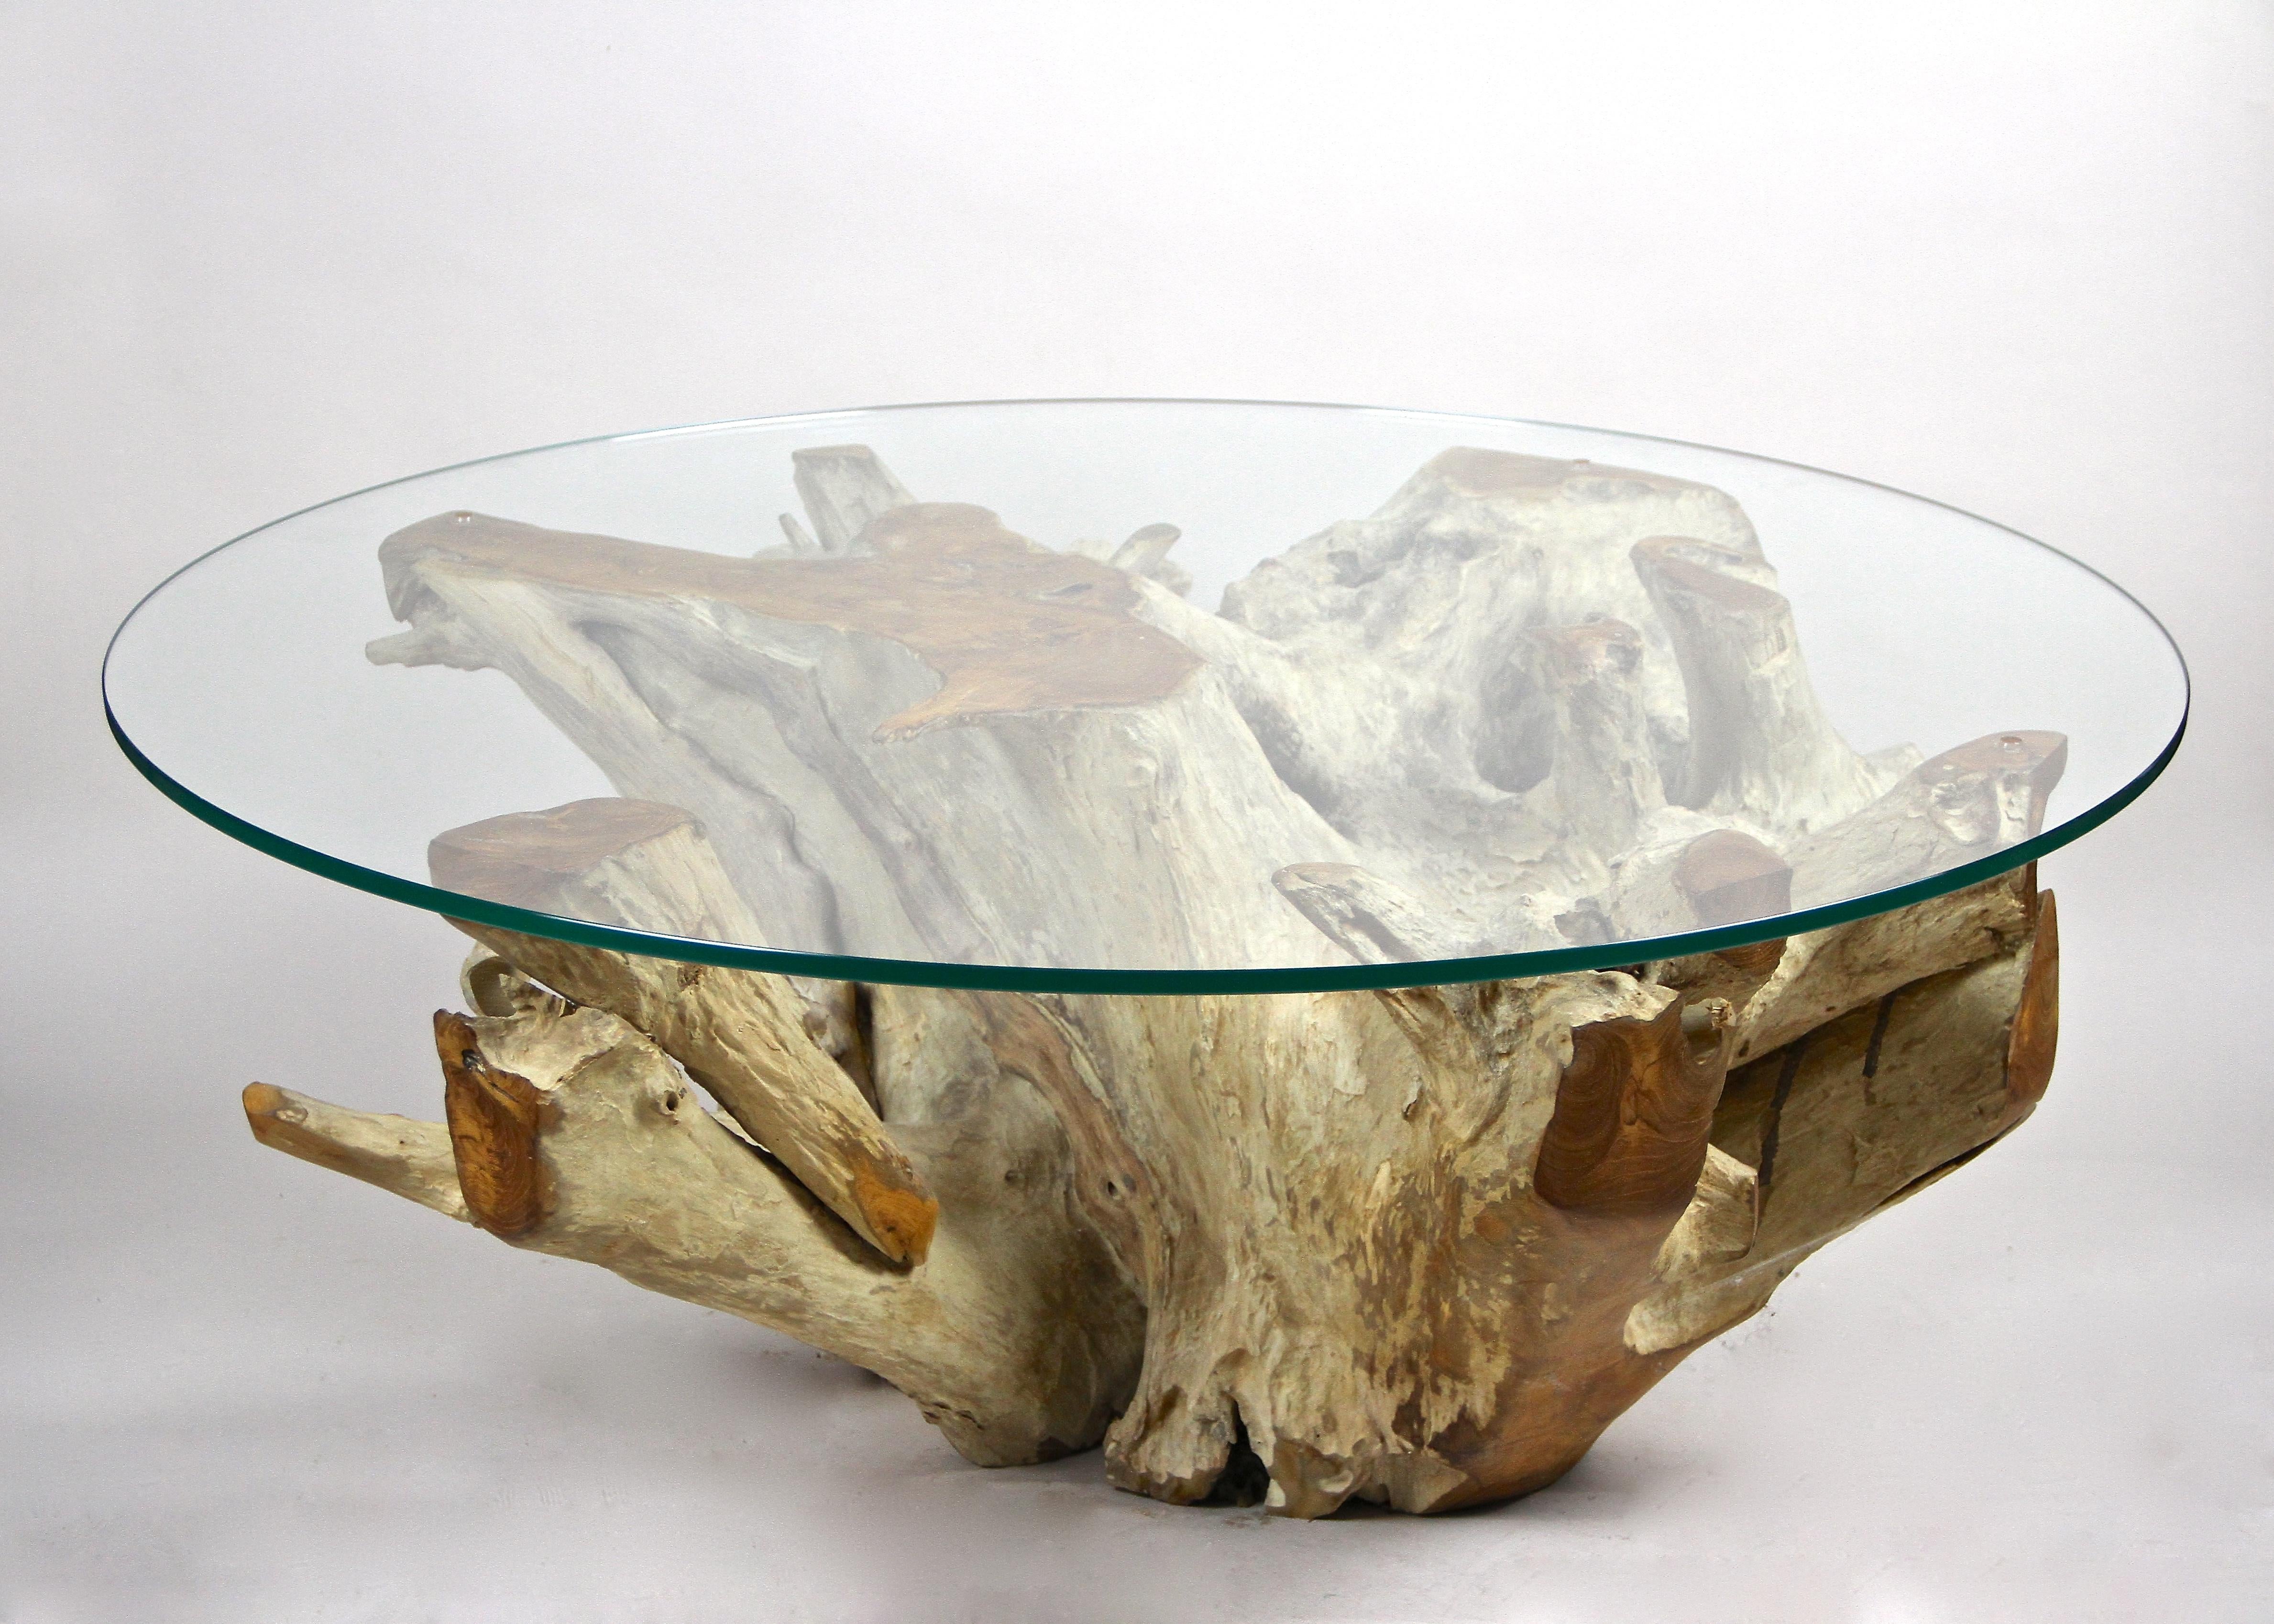 Einzigartiger runder Couchtisch aus organischem Teakholz mit Sicherheitsglasplatte. Dieser moderne, organische Tisch wurde kunstvoll aus einer einzigen massiven Teakholzwurzel gefertigt, die der Künstler kunstvoll zurechtgeschnitten hat, um diese